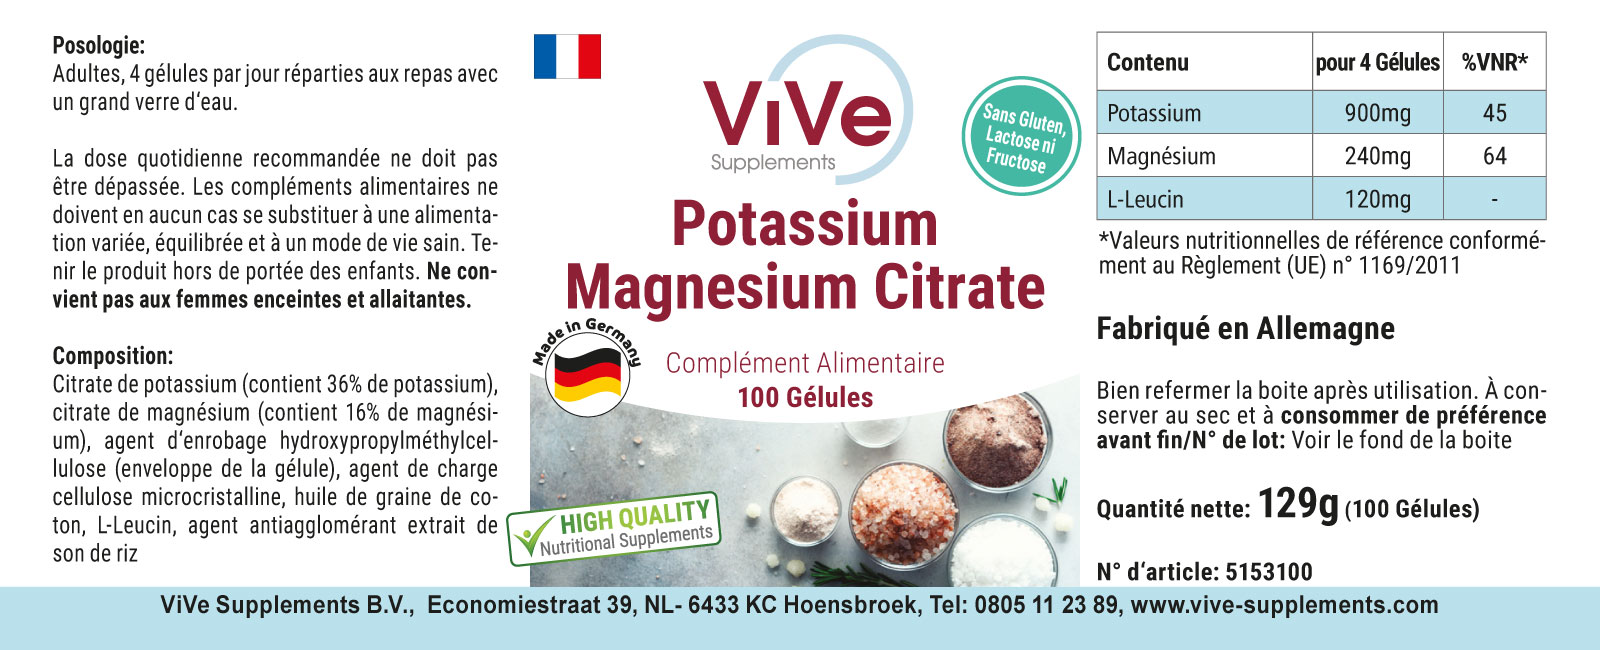 Potassium magnesium citrate